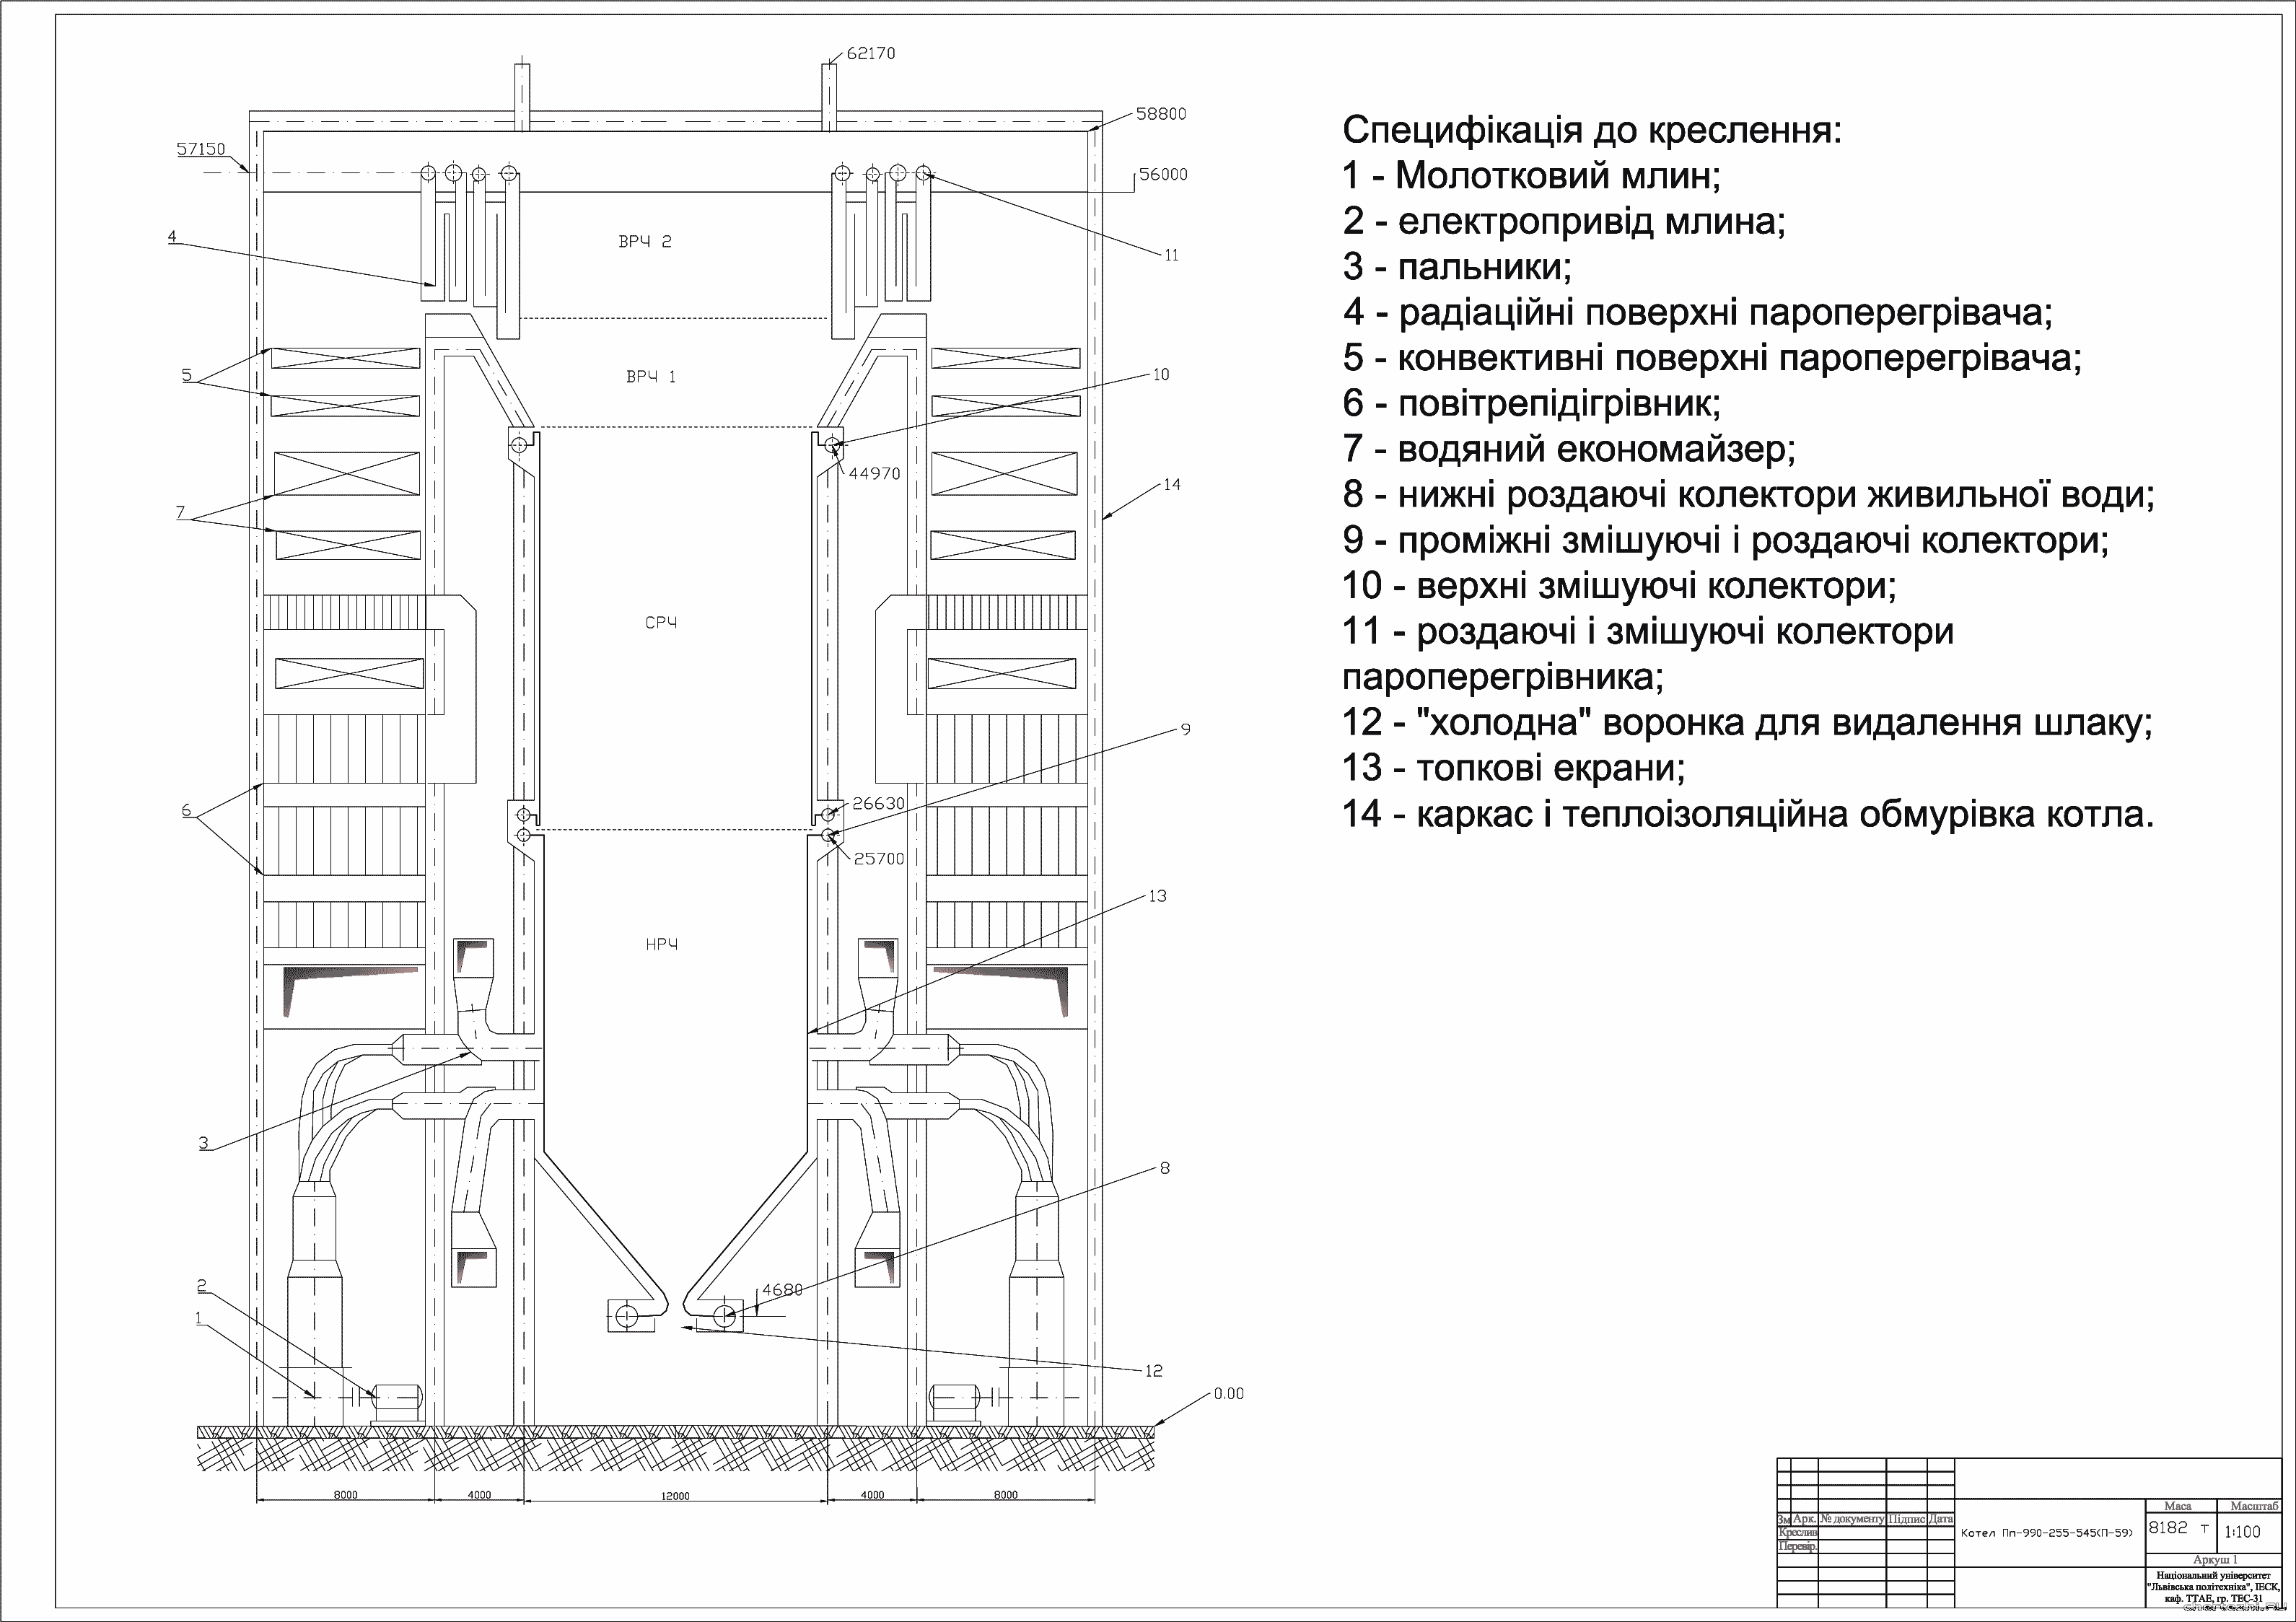 Курсовий проект - Тепловий розрахунок парового котла П-59